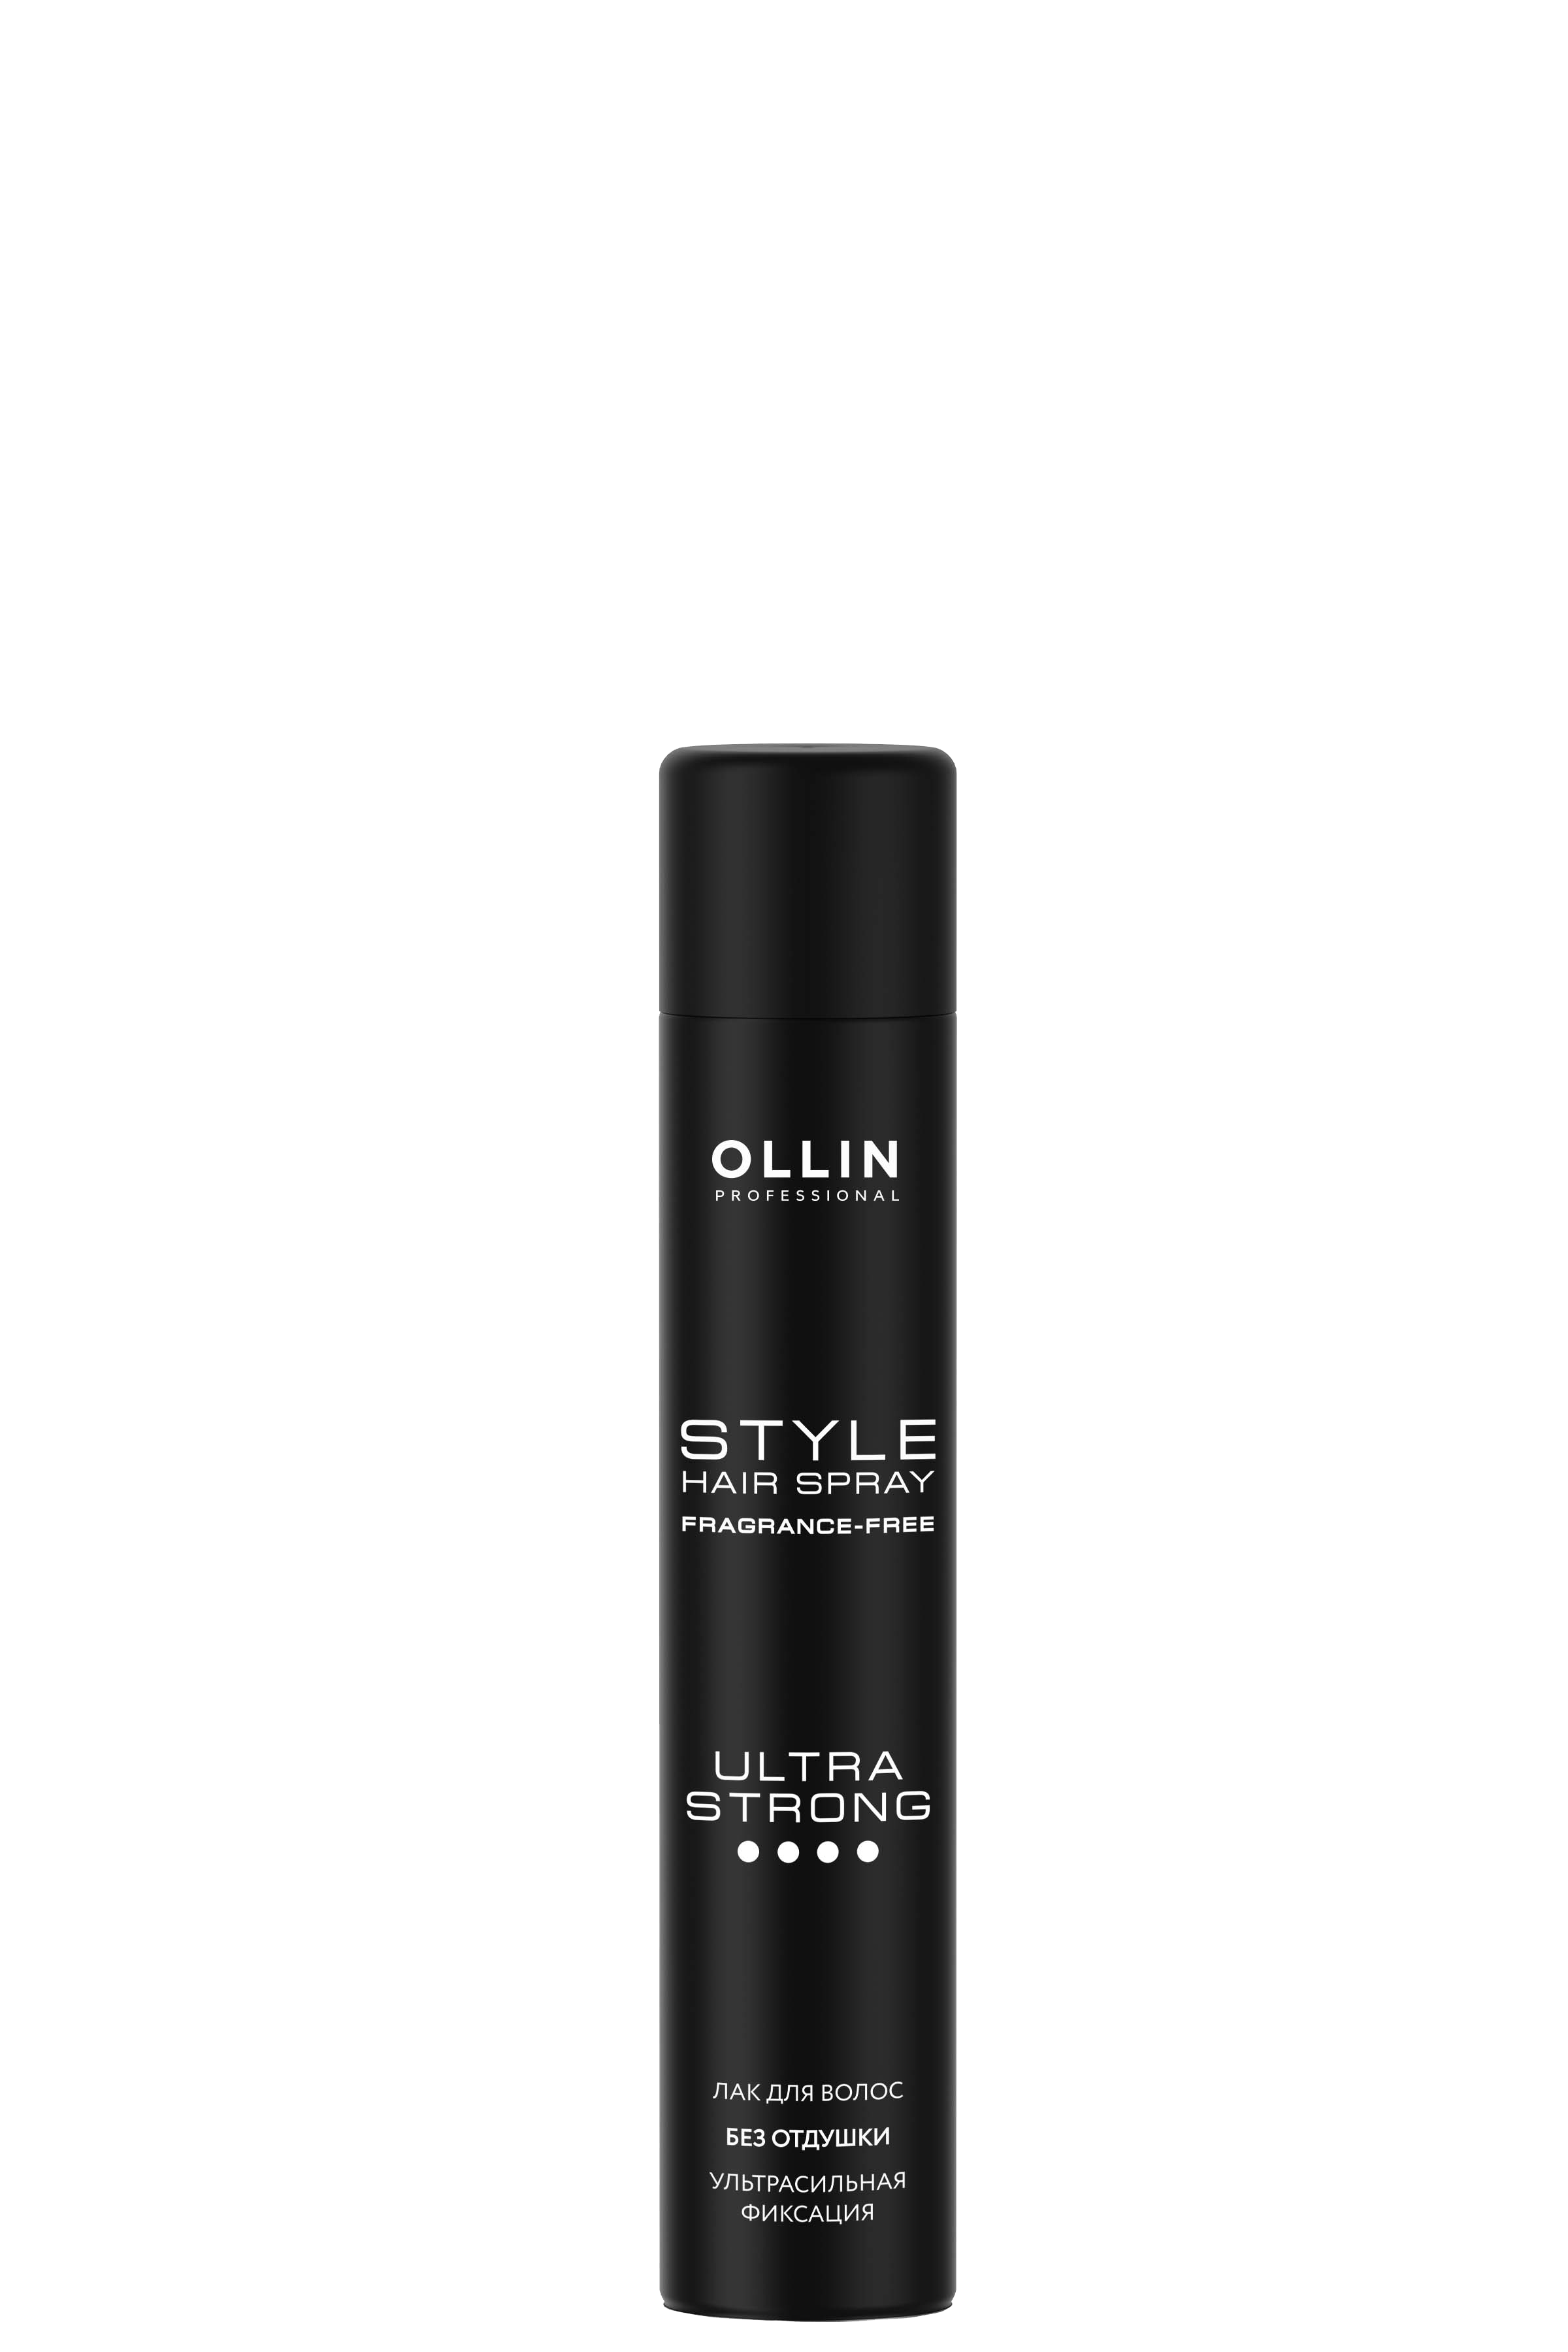 Черный лак для волос. Ollin Style лак для волос ультрасильной фиксации 500мл. Лак Ollin Style сильная фиксация. Ollin Style лак для волос сильной фиксации 500мл. Лак для волос ультрасильной фиксации Ollin.